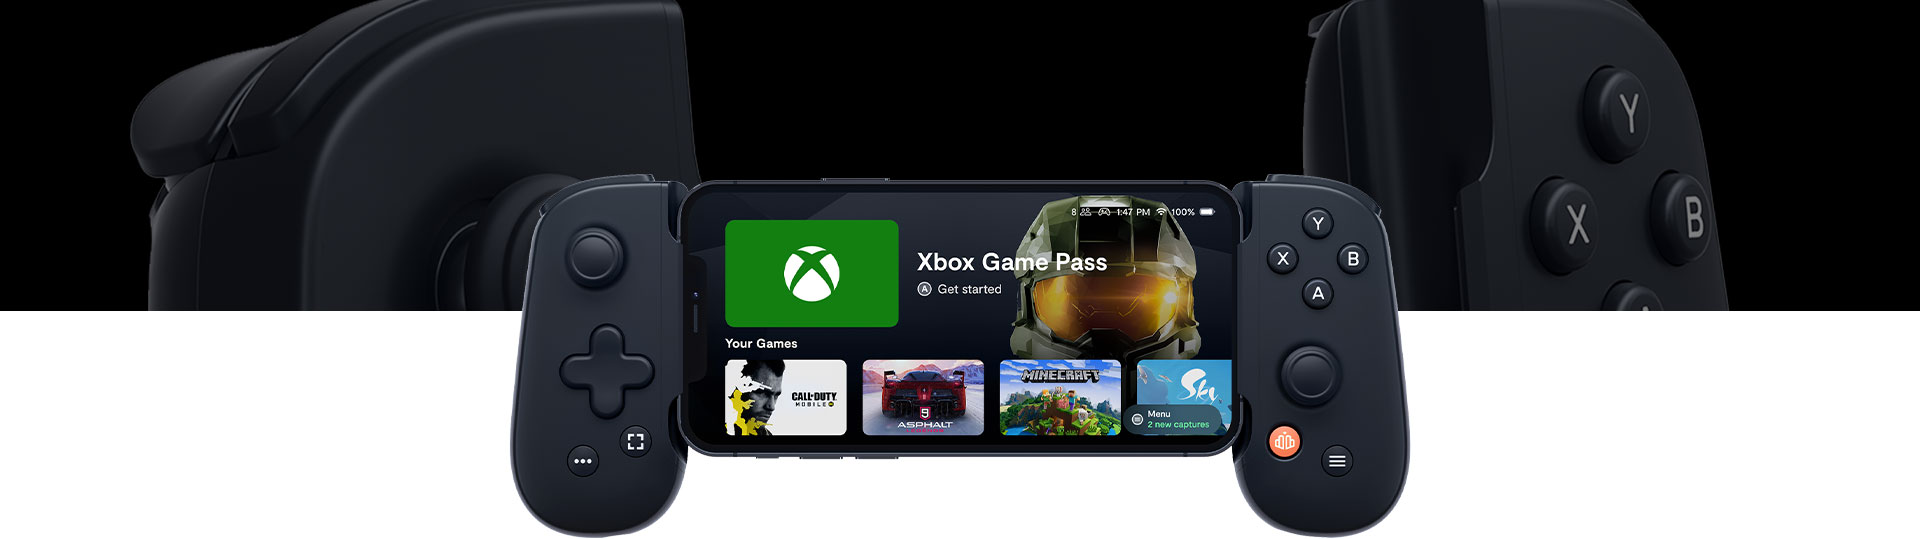 Schermata iniziale di Backbone One con Xbox Game Pass, Call of Duty, Asphalt, Minecraft e Sky.